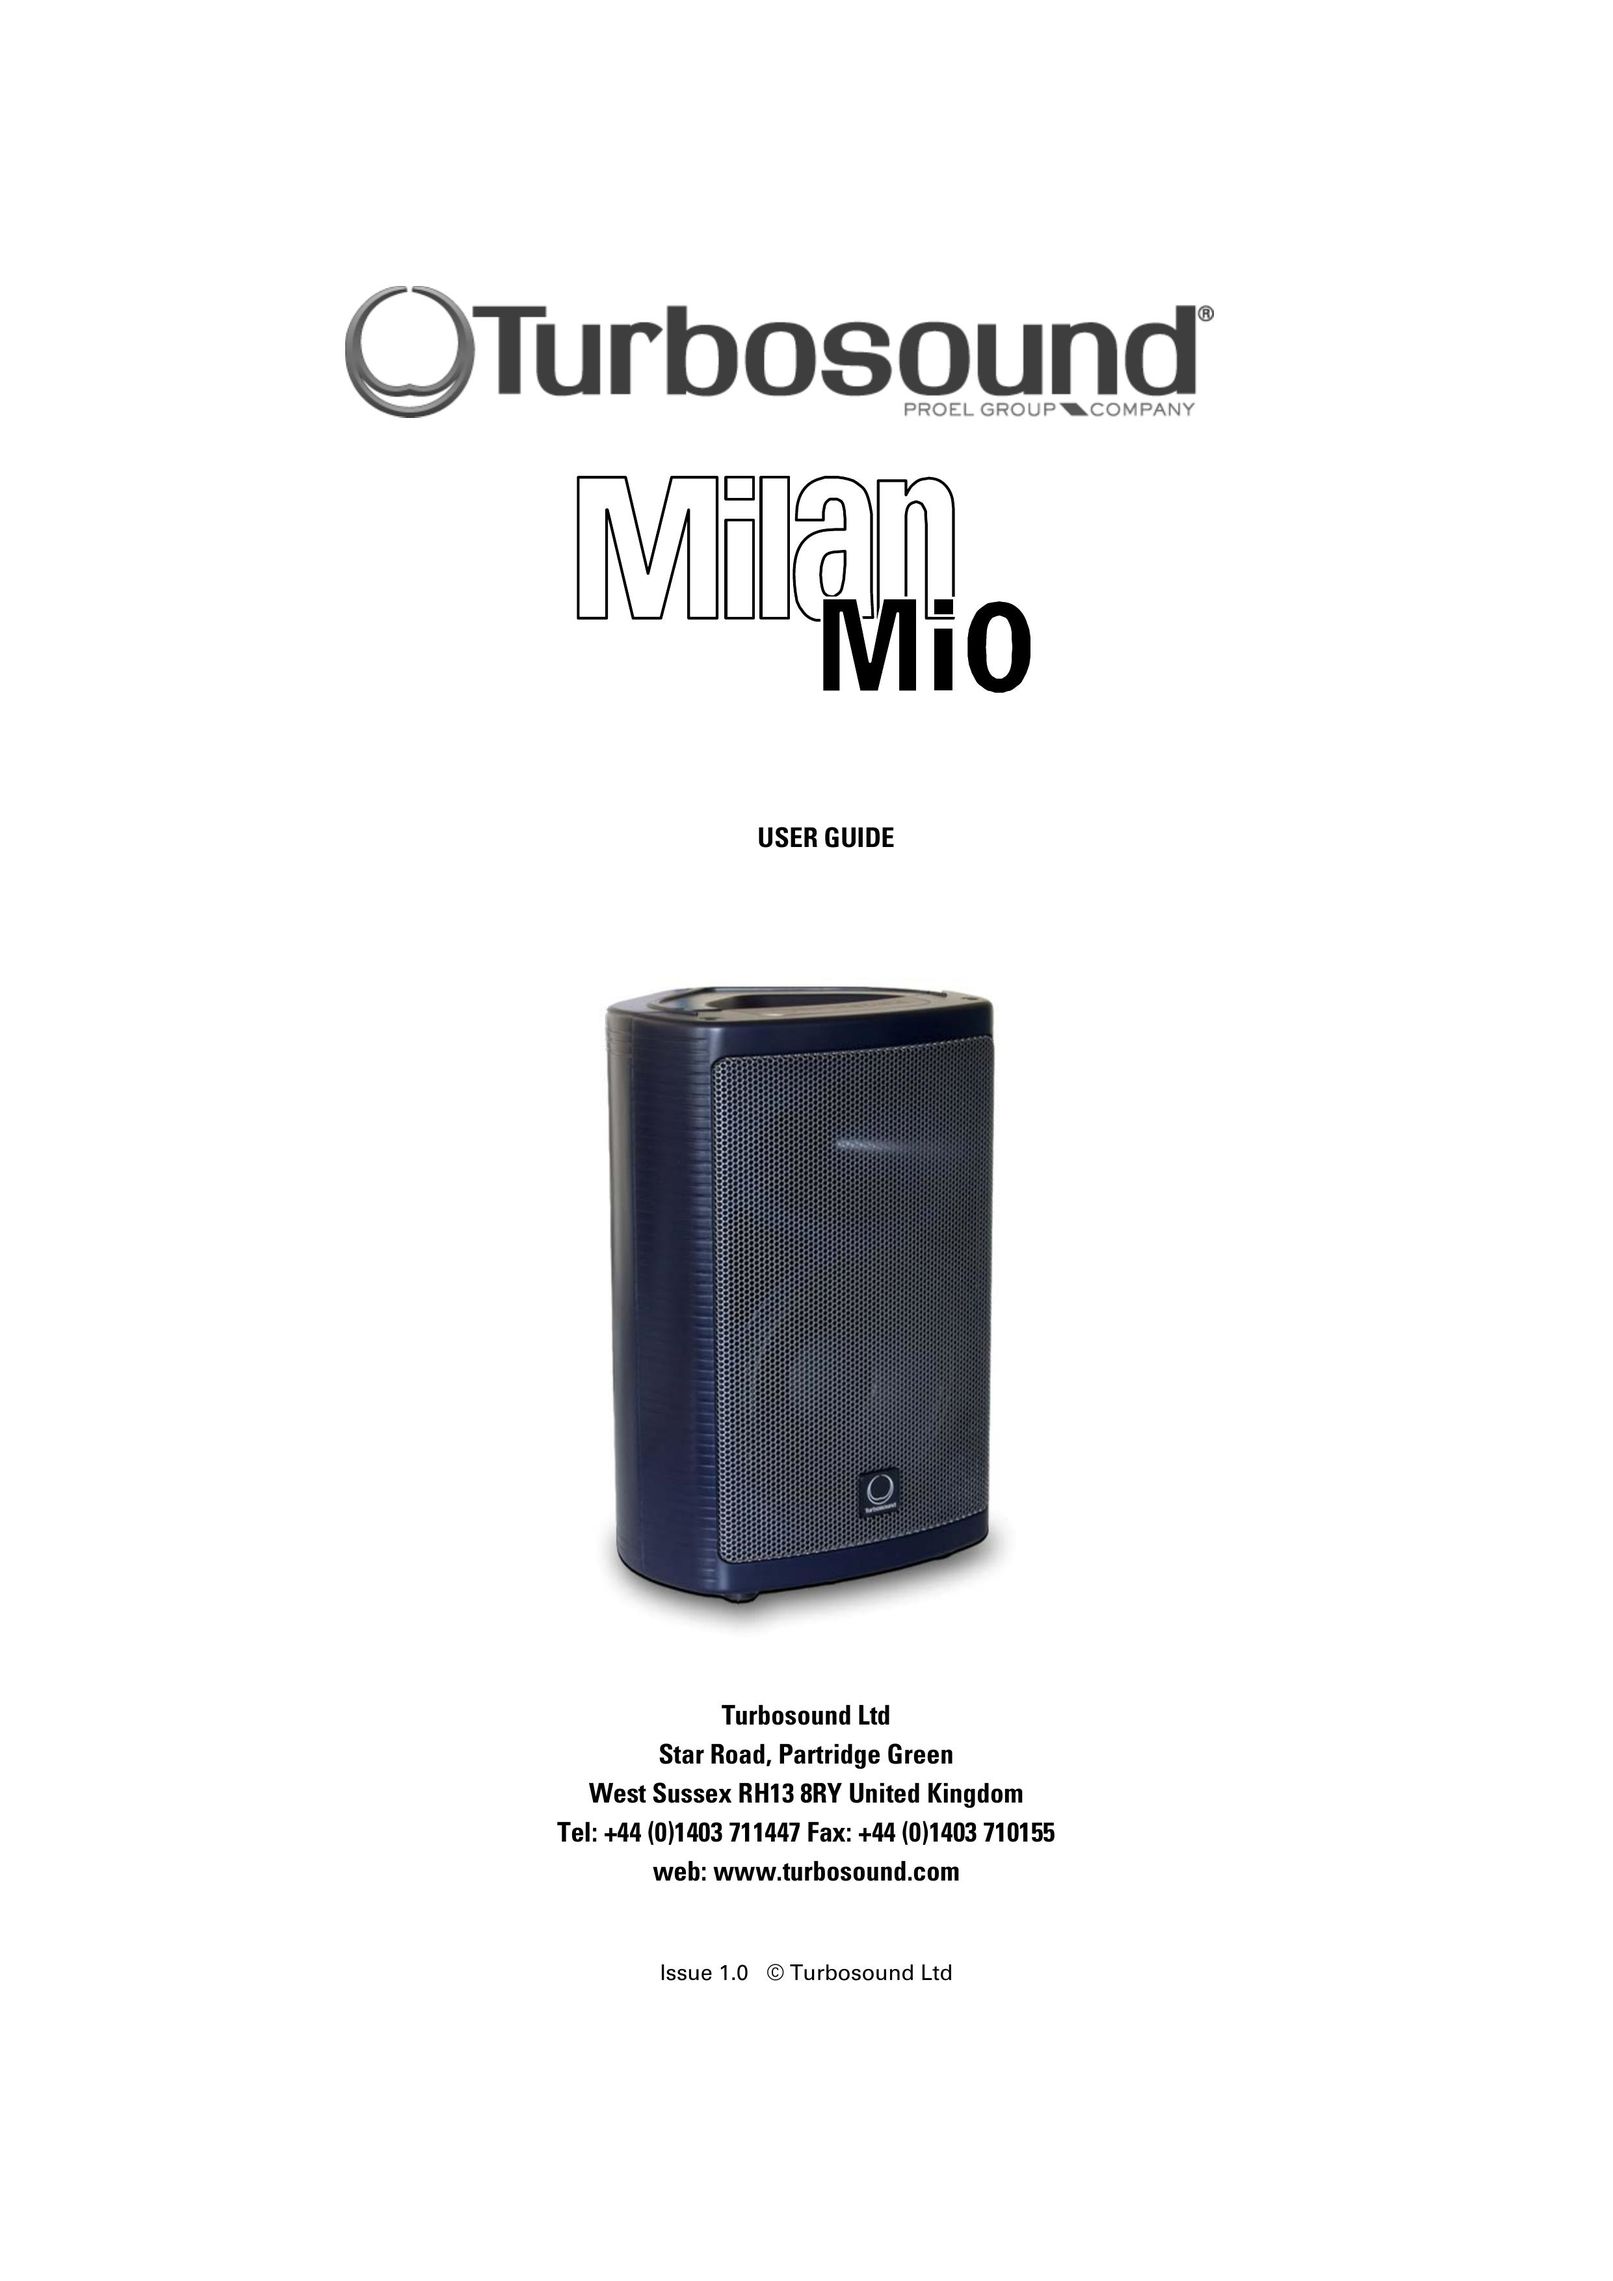 Turbosound Milan Mi0 Speaker User Manual